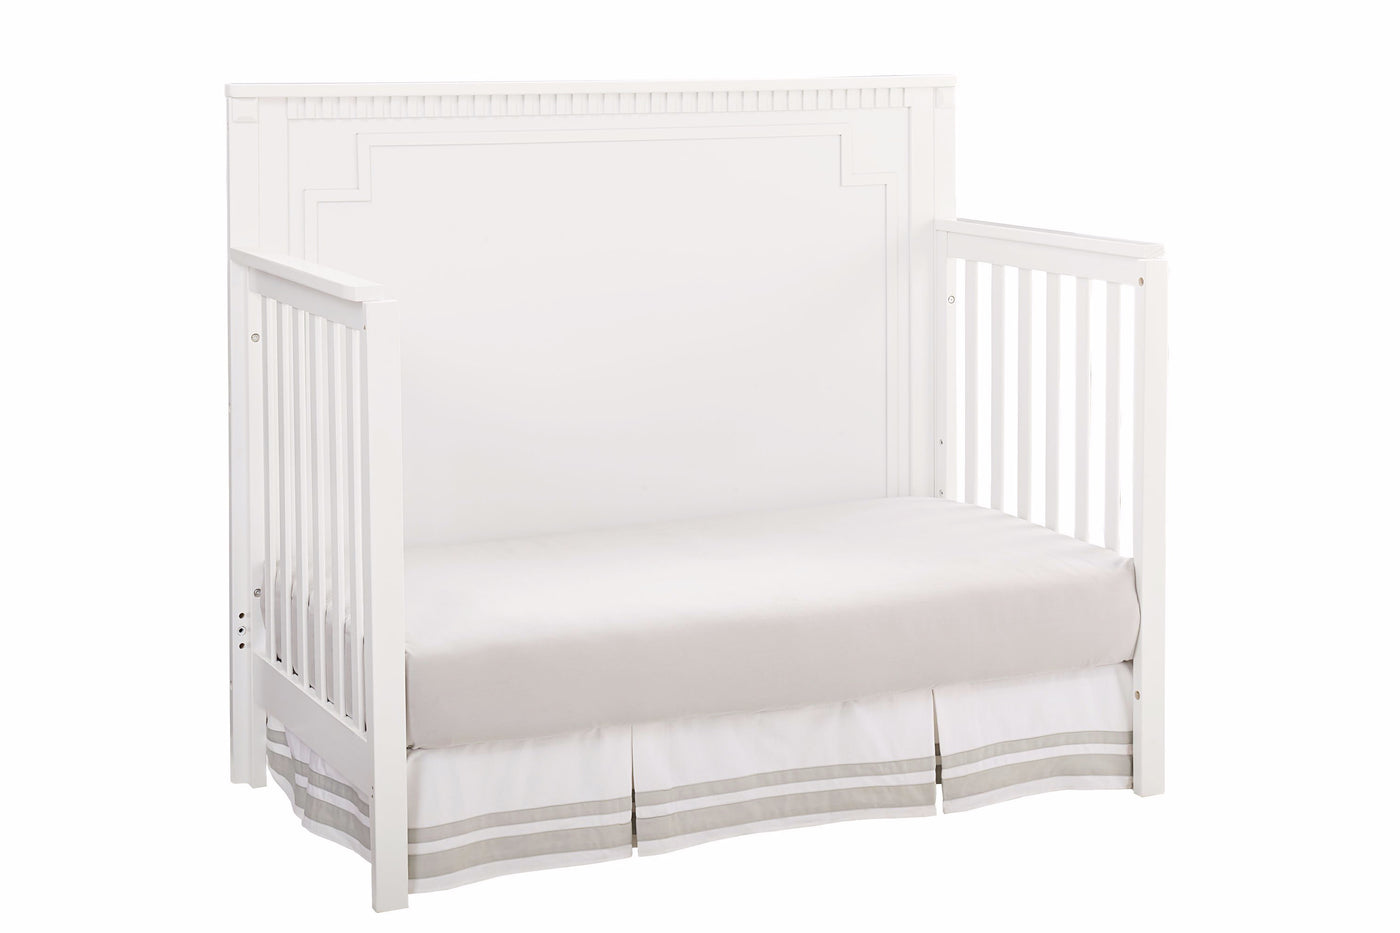 Emery Convertible Panel Crib - White